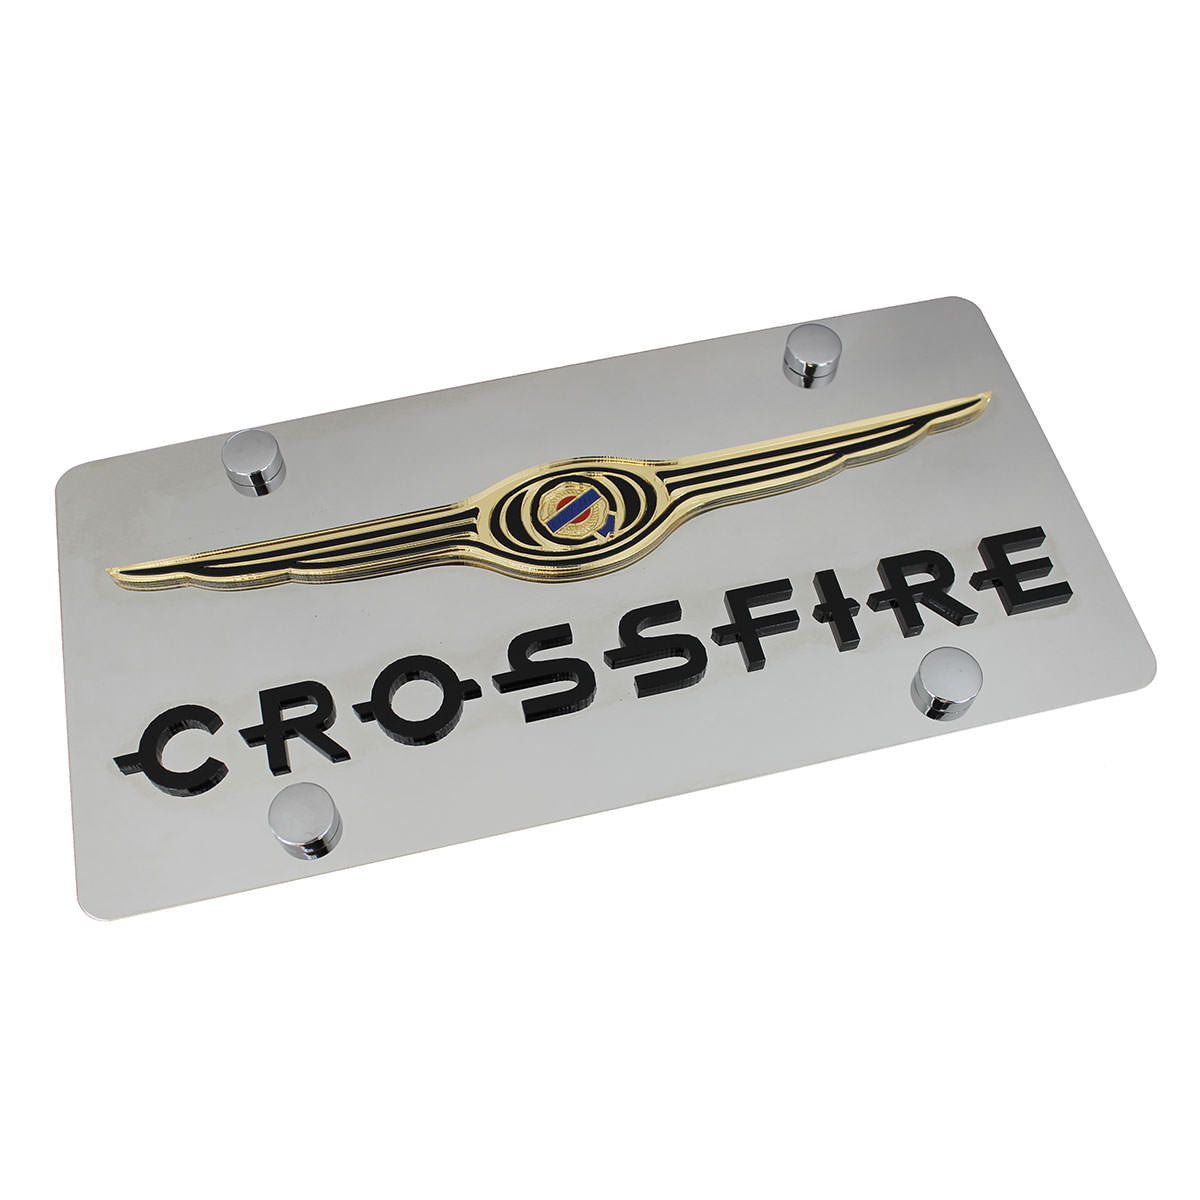 Chrysler Crossfire License Plate